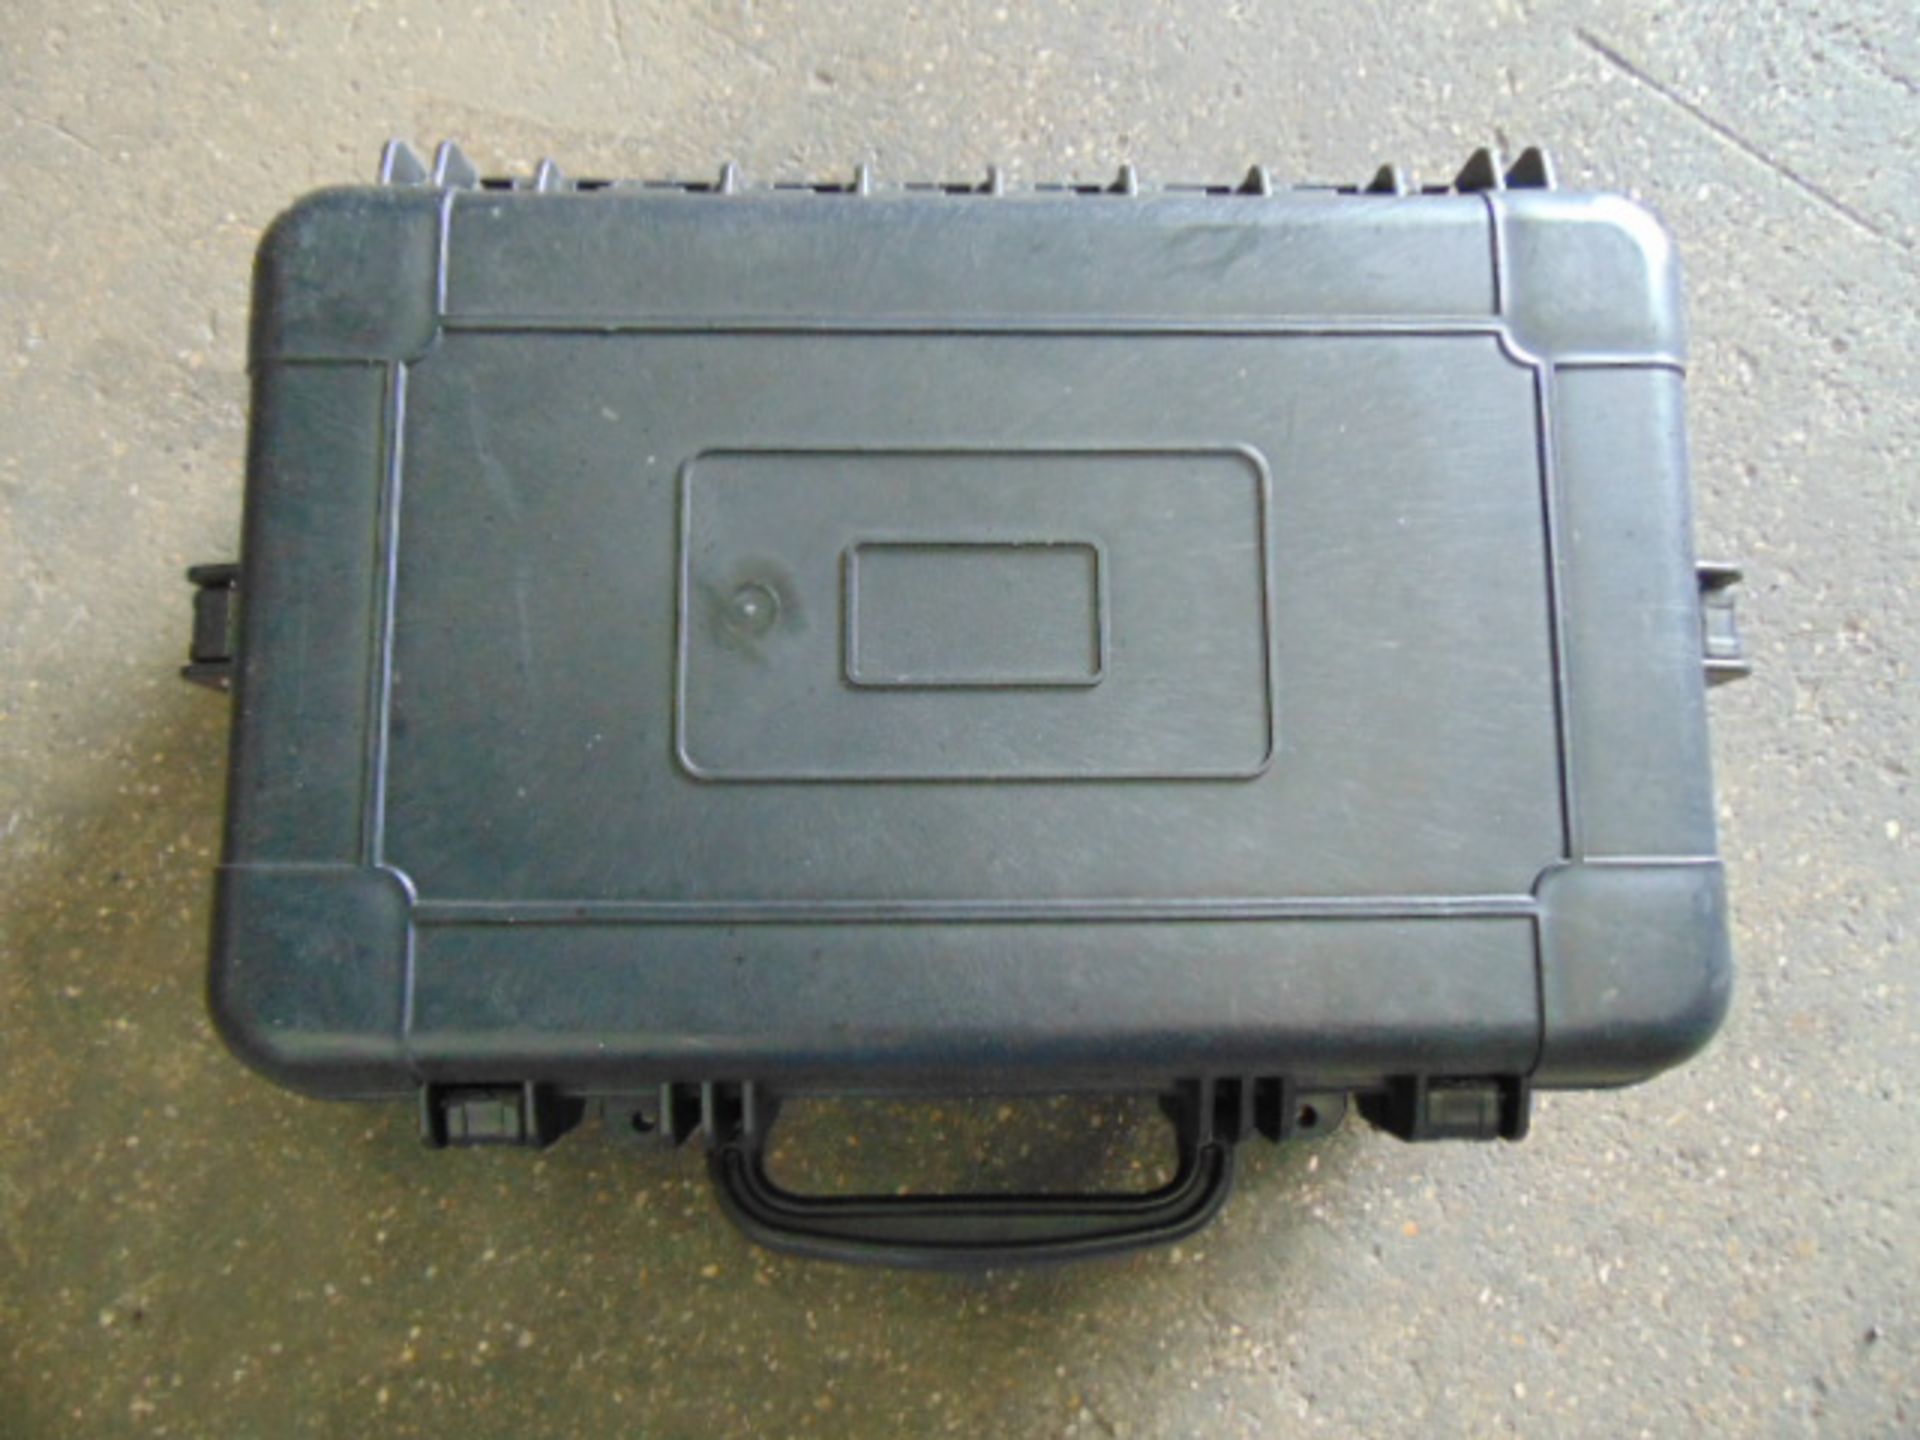 2 x Heavy-duty Waterproof Peli Style Hard Cases with Removeable Foam Inserts - Bild 3 aus 5